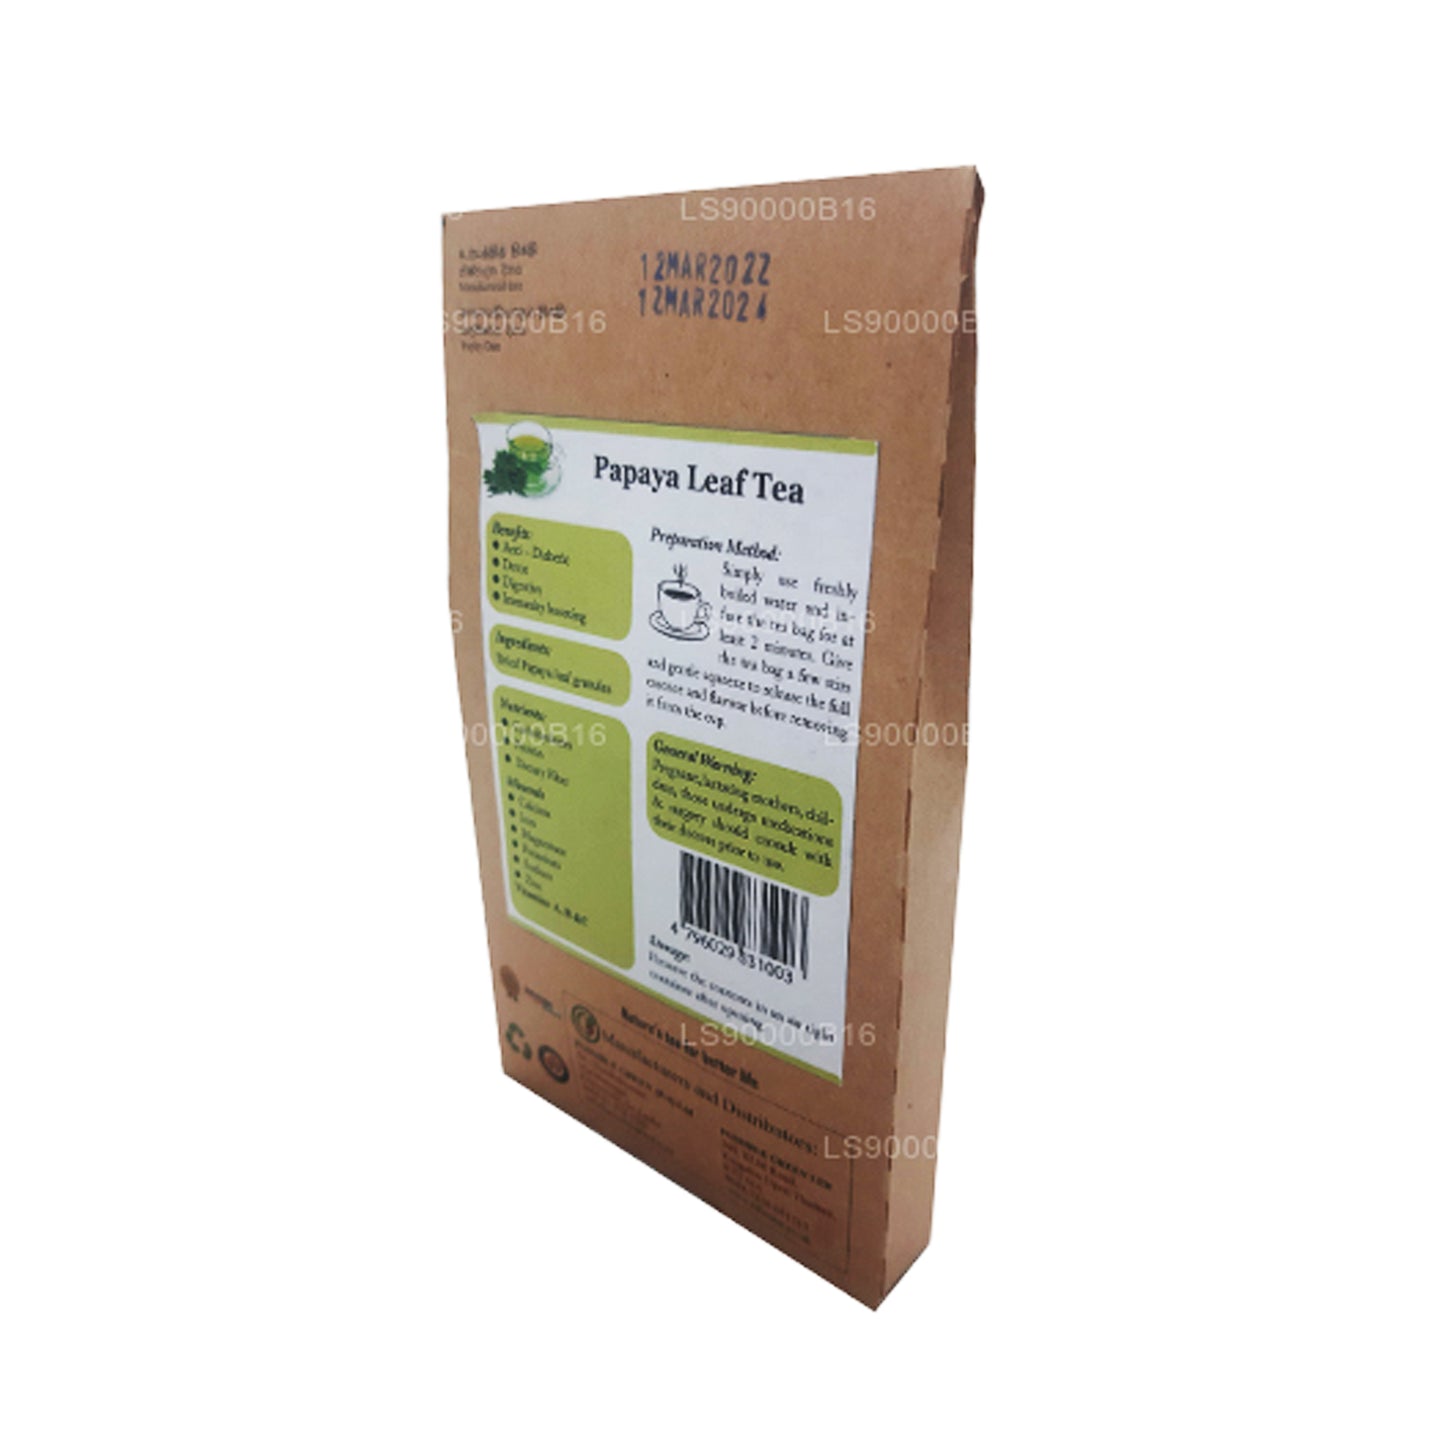 Lifetone Papaya Leaf Tea (30g)